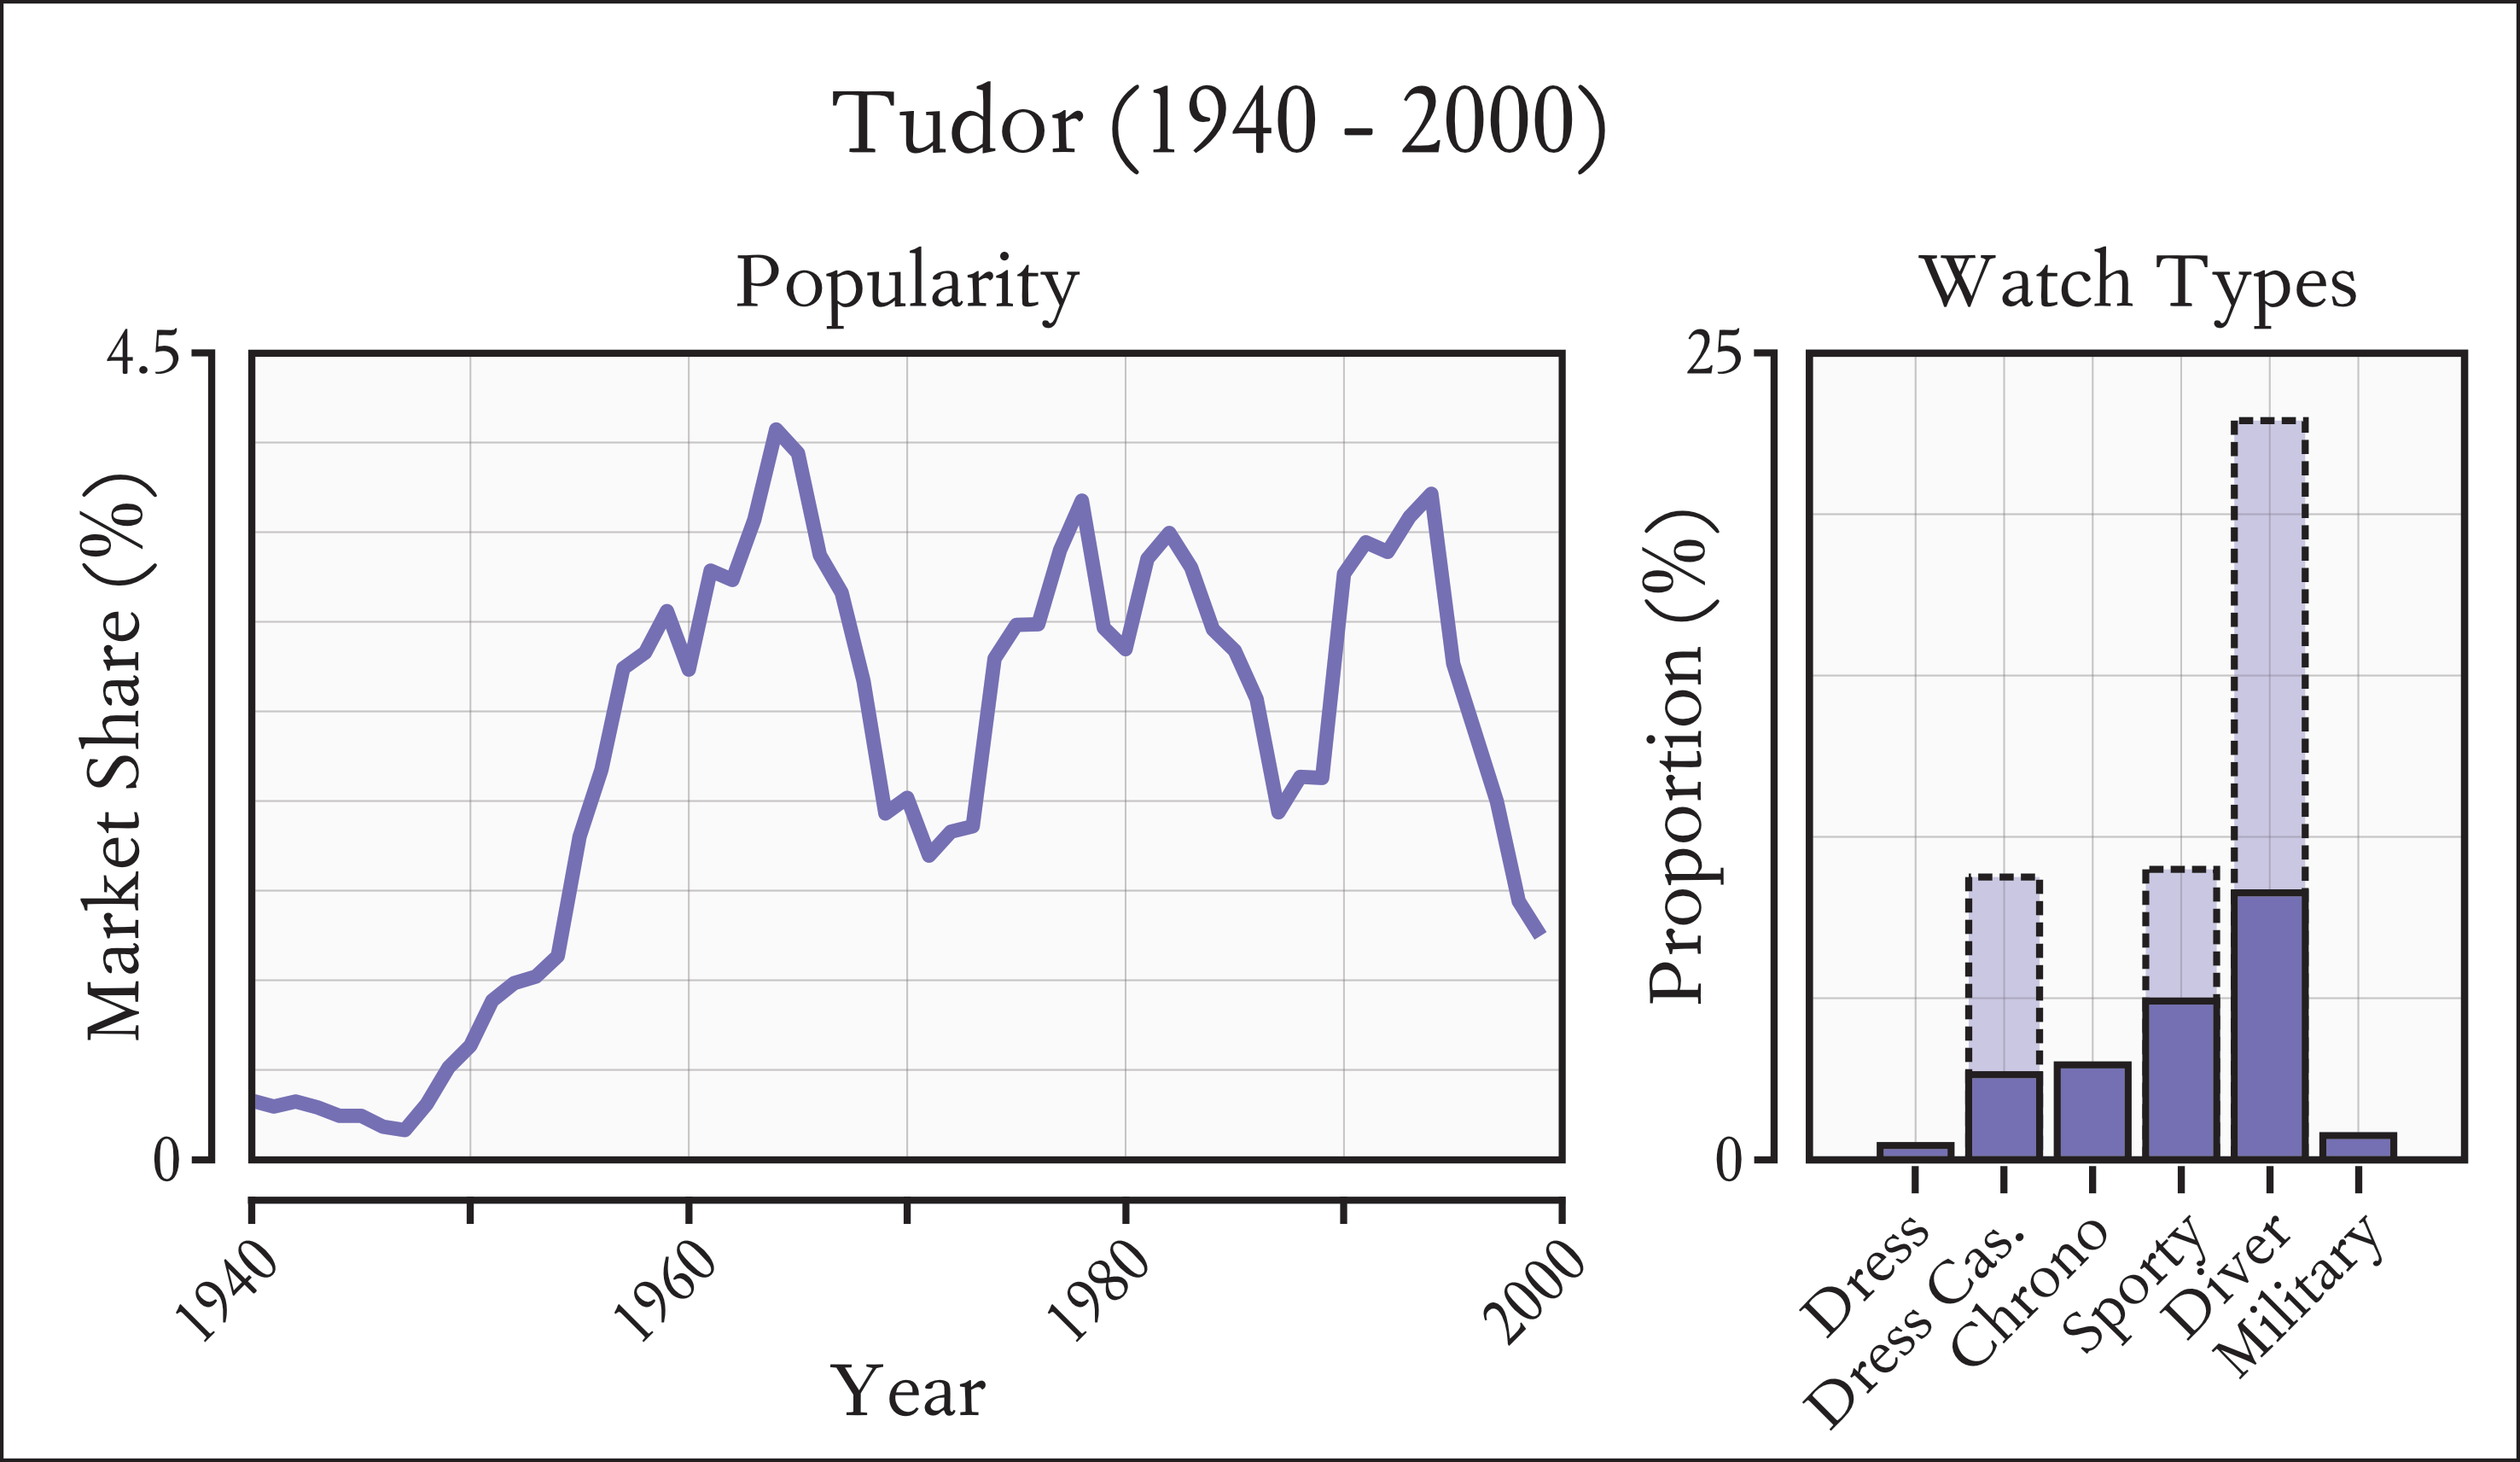 Distribution of Tudor popularity between 1940-2000